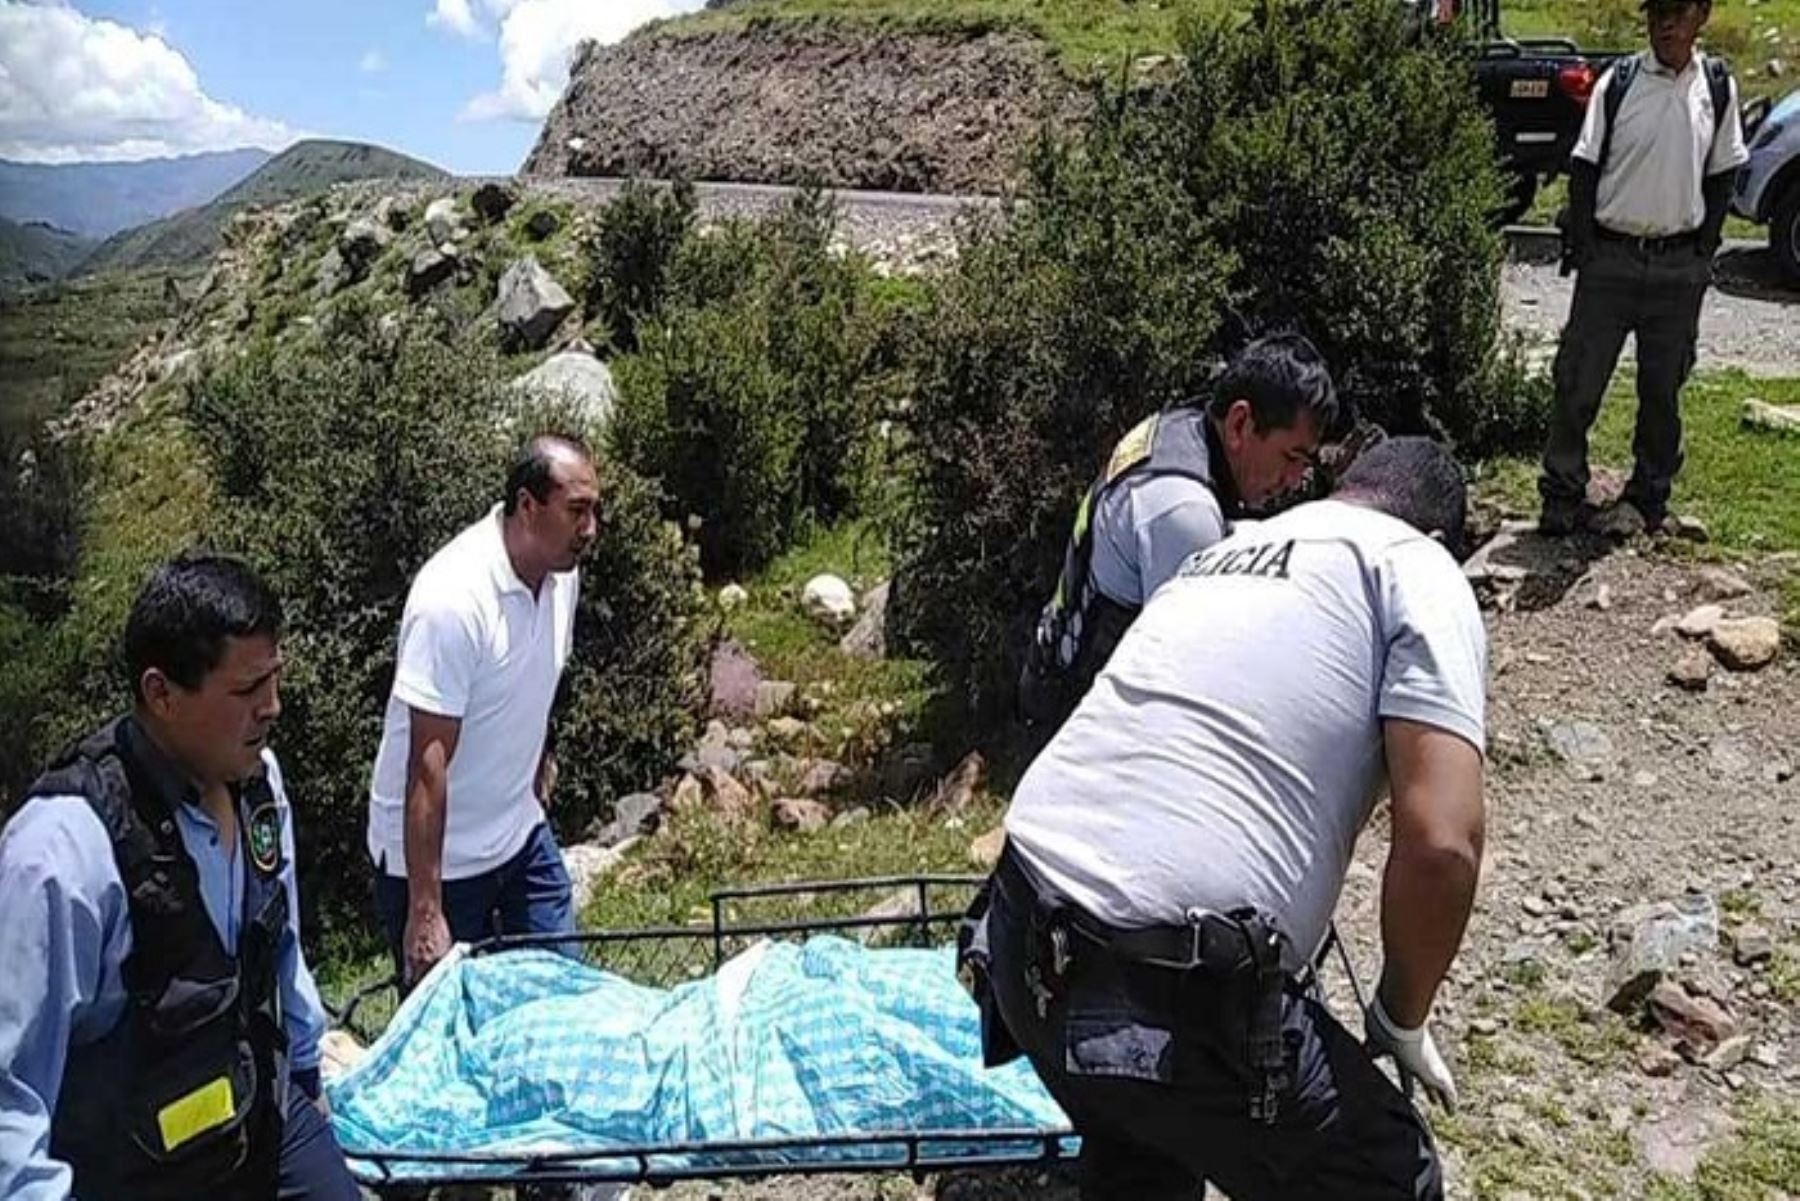 El cadáver de una joven mujer fue hallado hoy en el río Quilcayhuanca, jurisdicción del distrito de Independencia en la provincia de Huaraz, región Áncash.